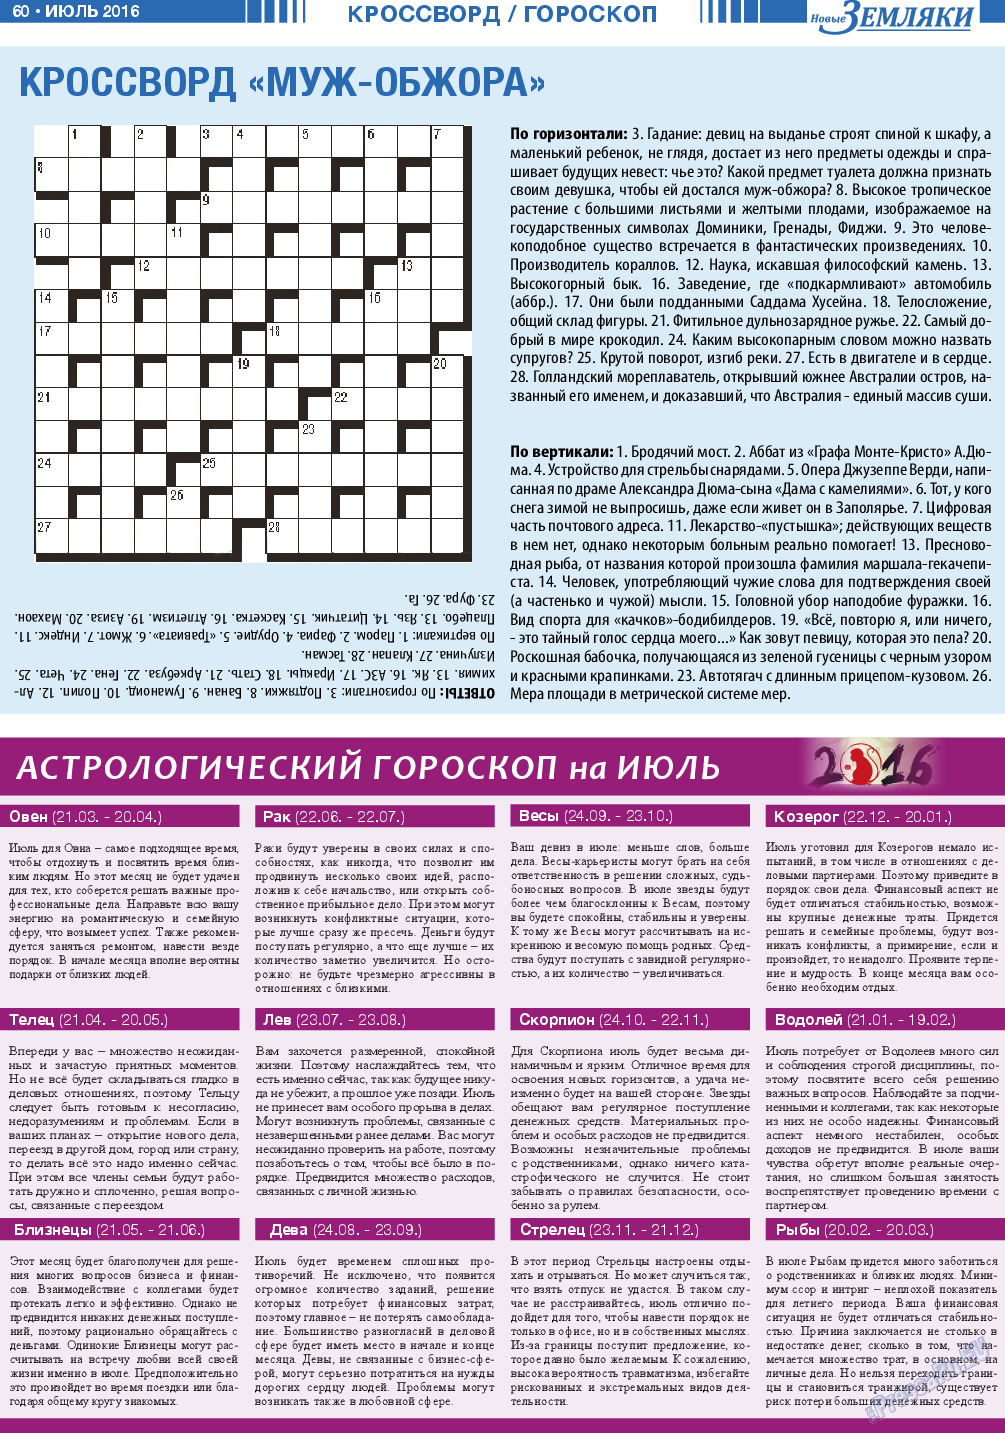 Новые Земляки, газета. 2016 №7 стр.60